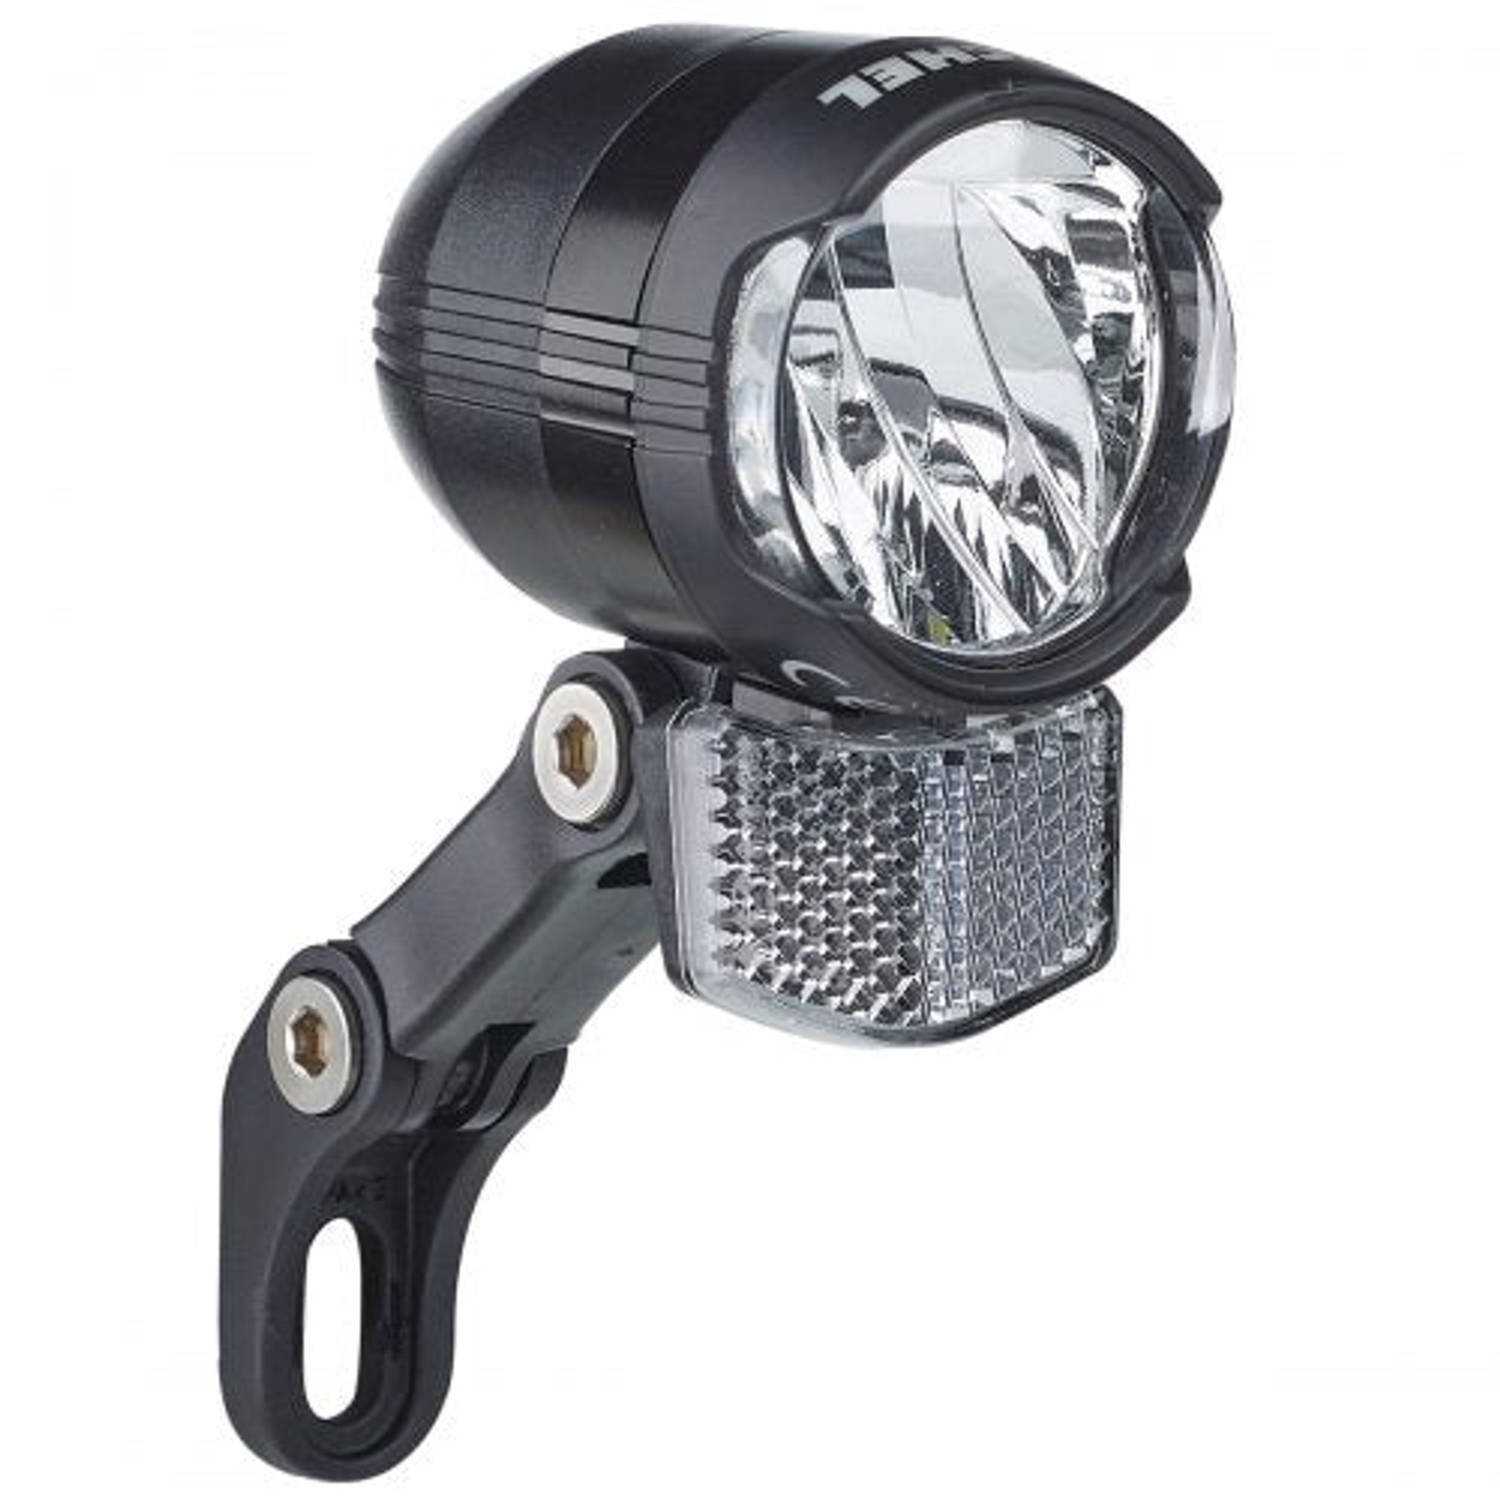 Büchel koplamp Shiny 80 aan-uit functie led 80 lux zwart